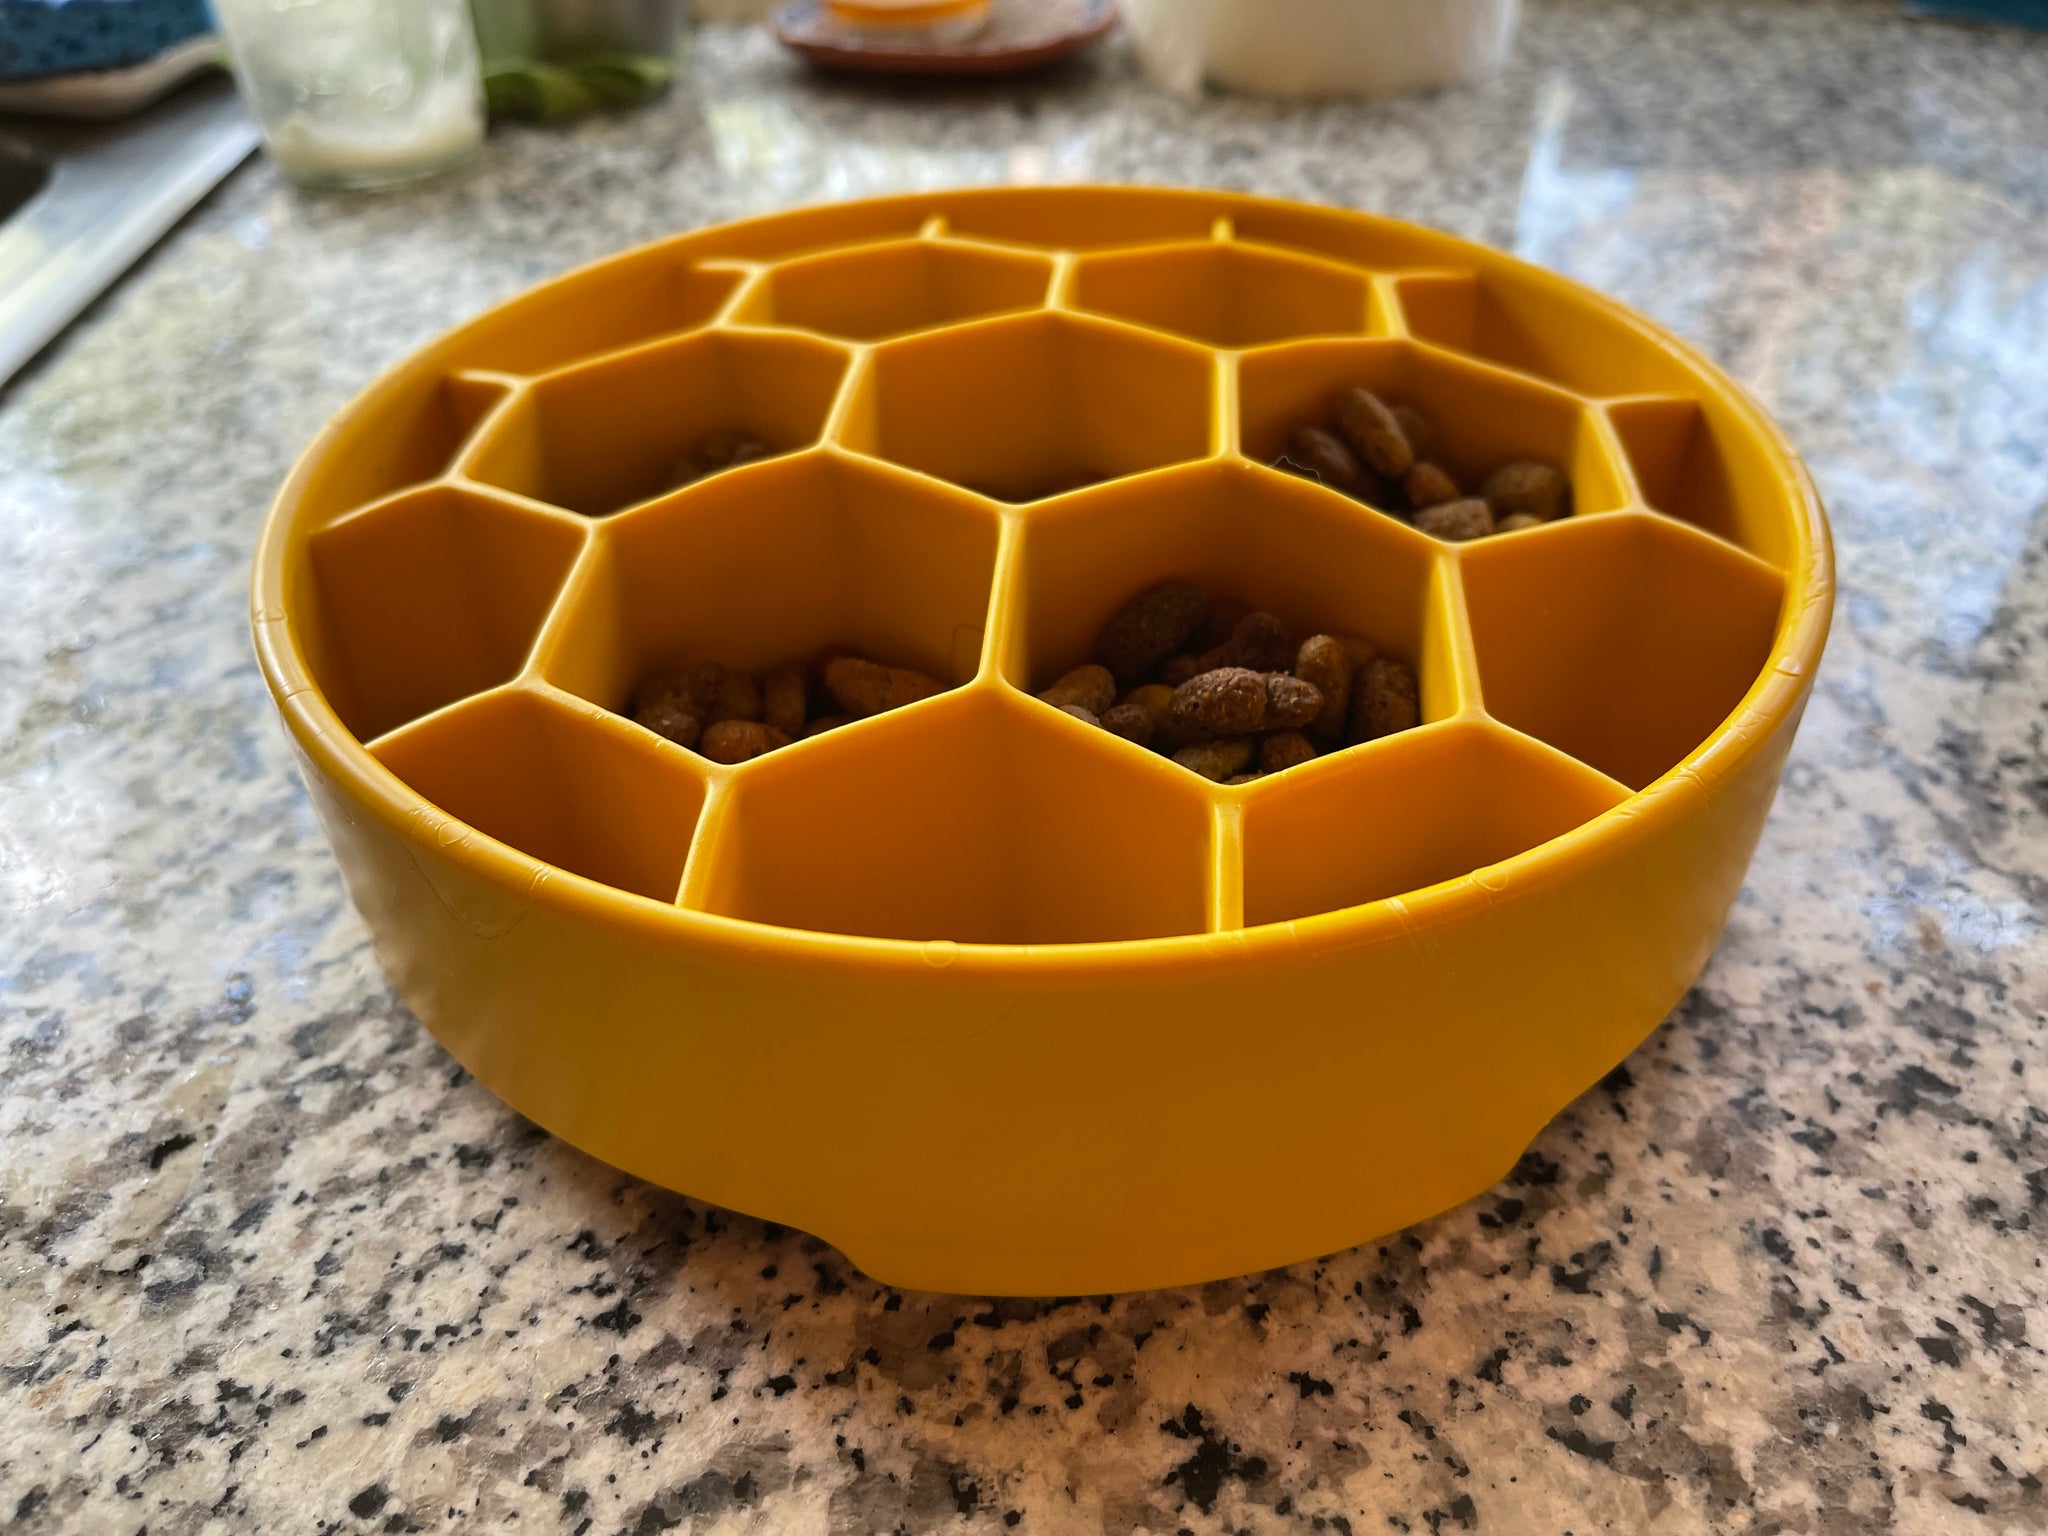 Splash & Go Carbon Fiber Dog Bowl – The Freshly Minted